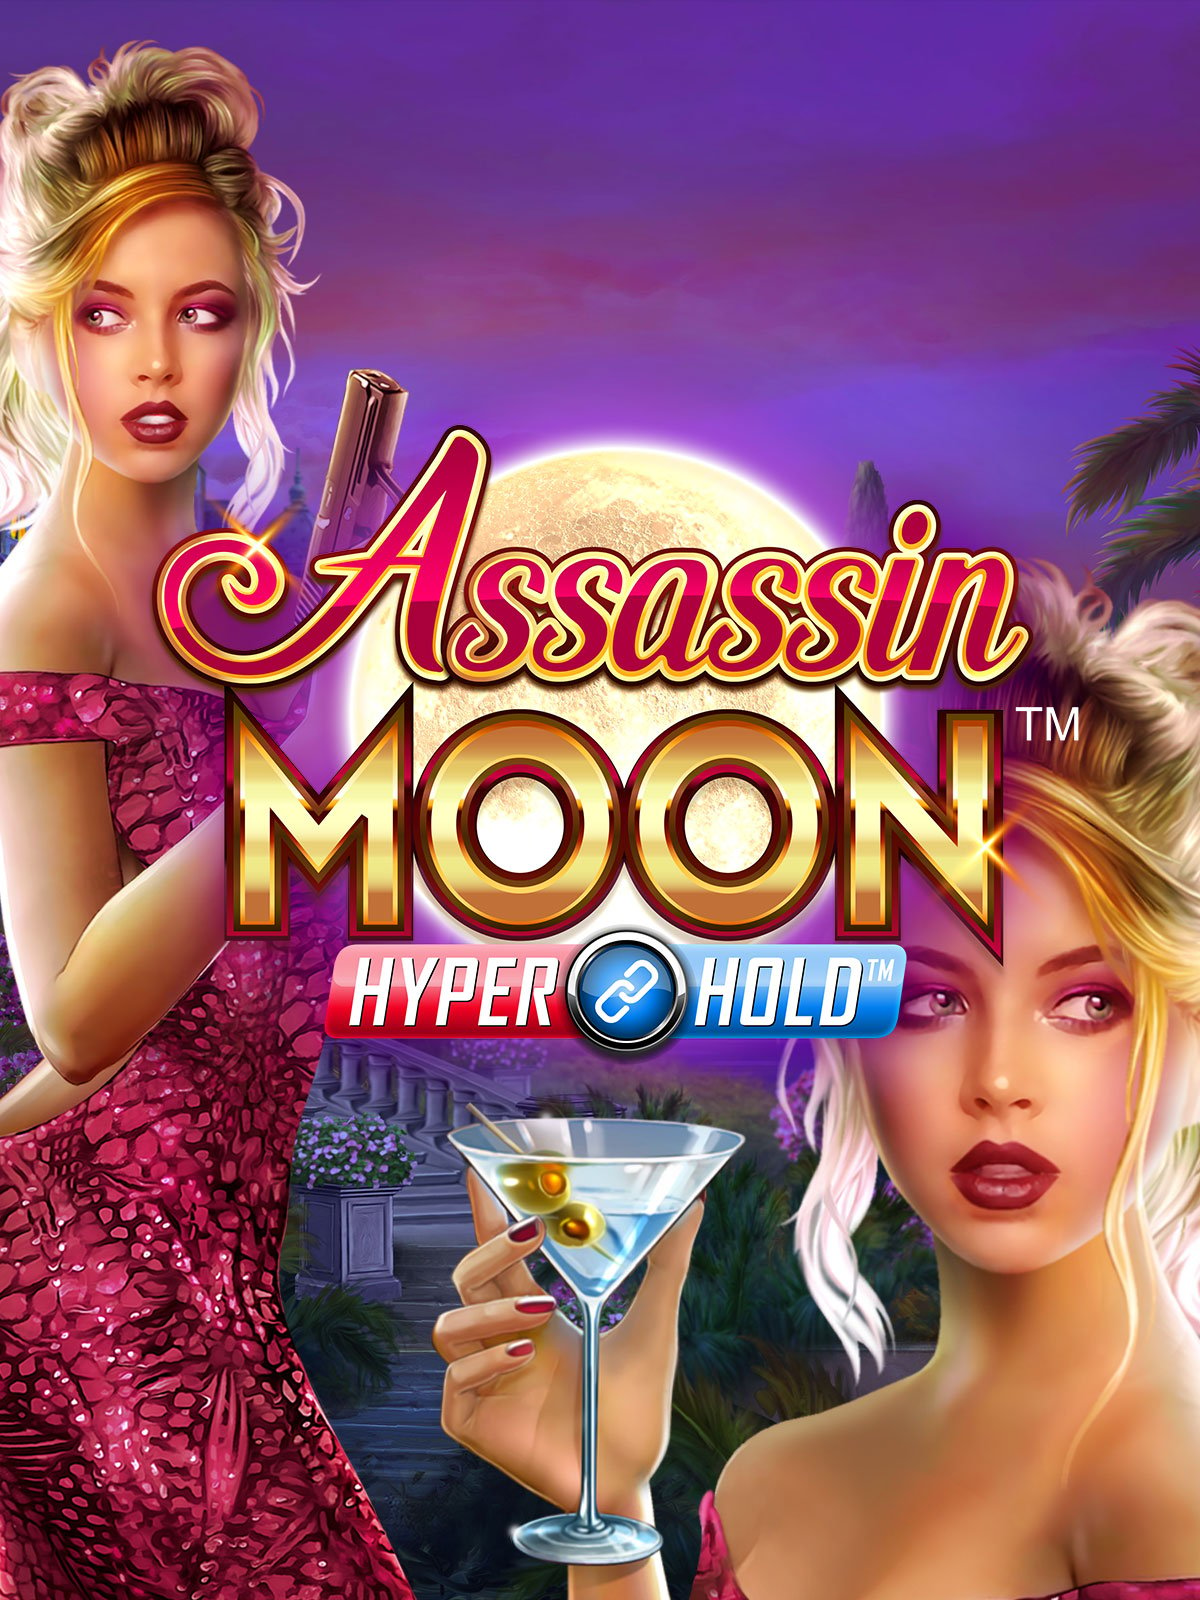 Assassin Moon online slot